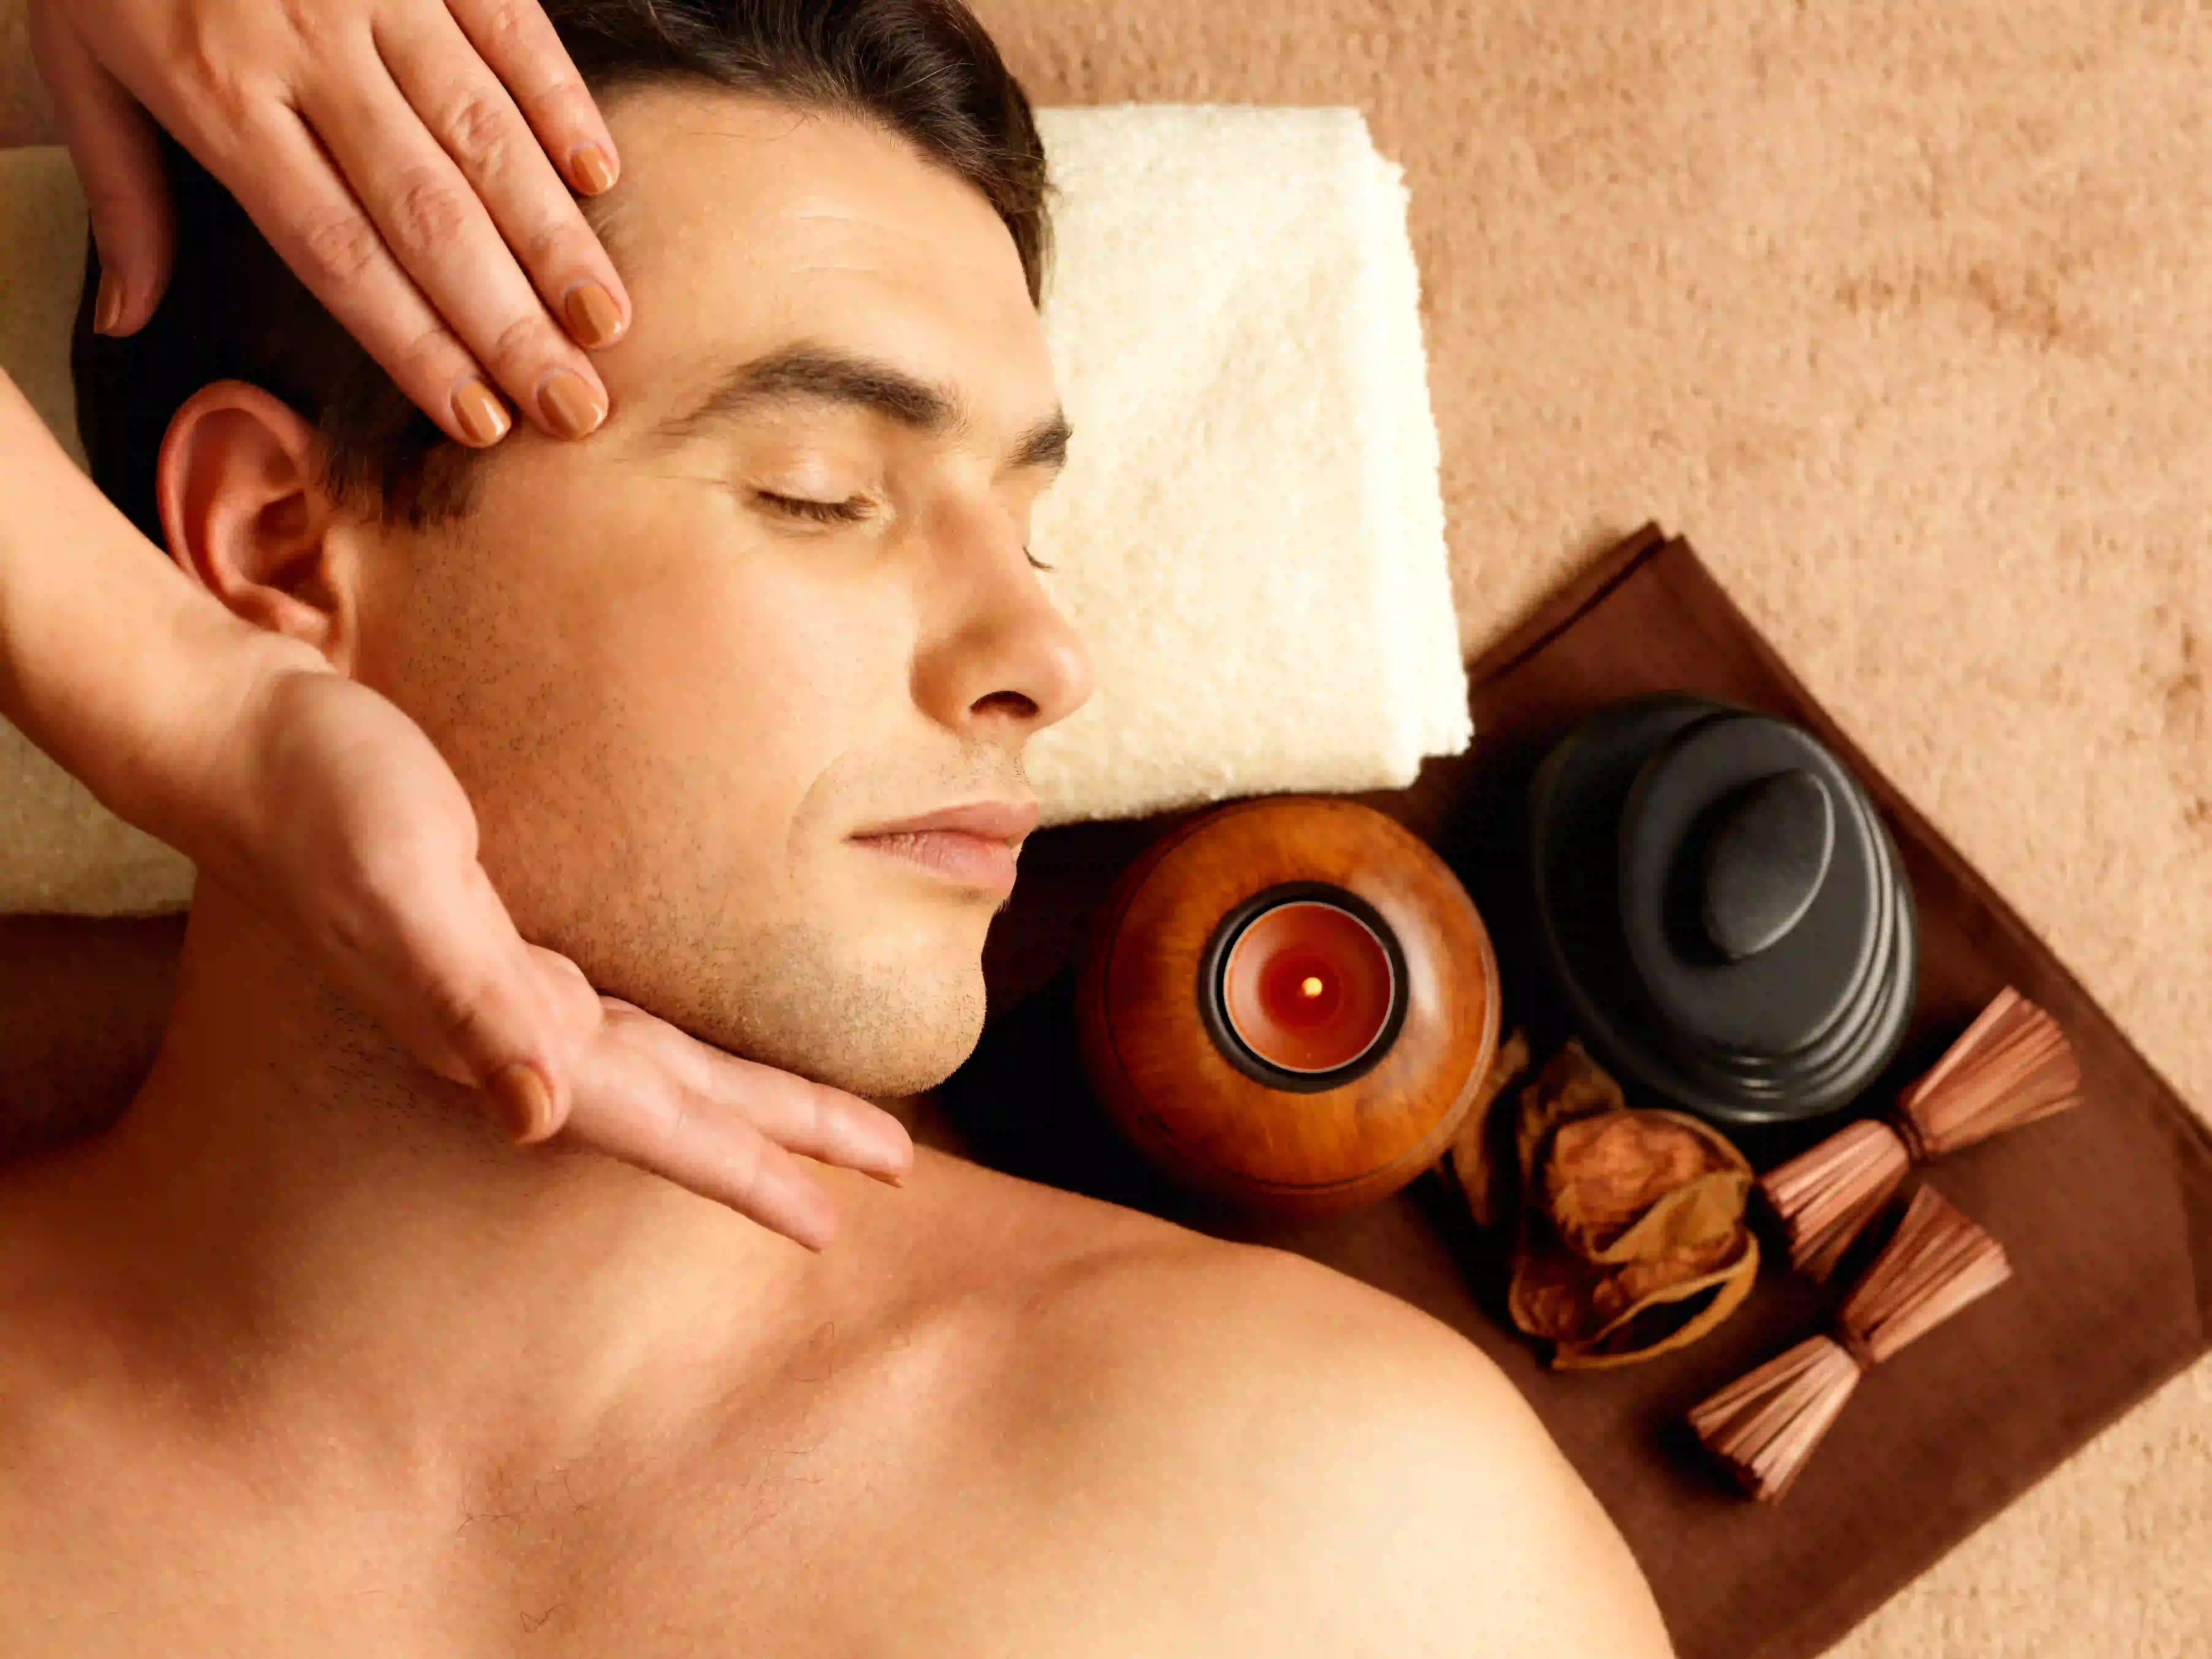 man enjoying kerala massage to massage